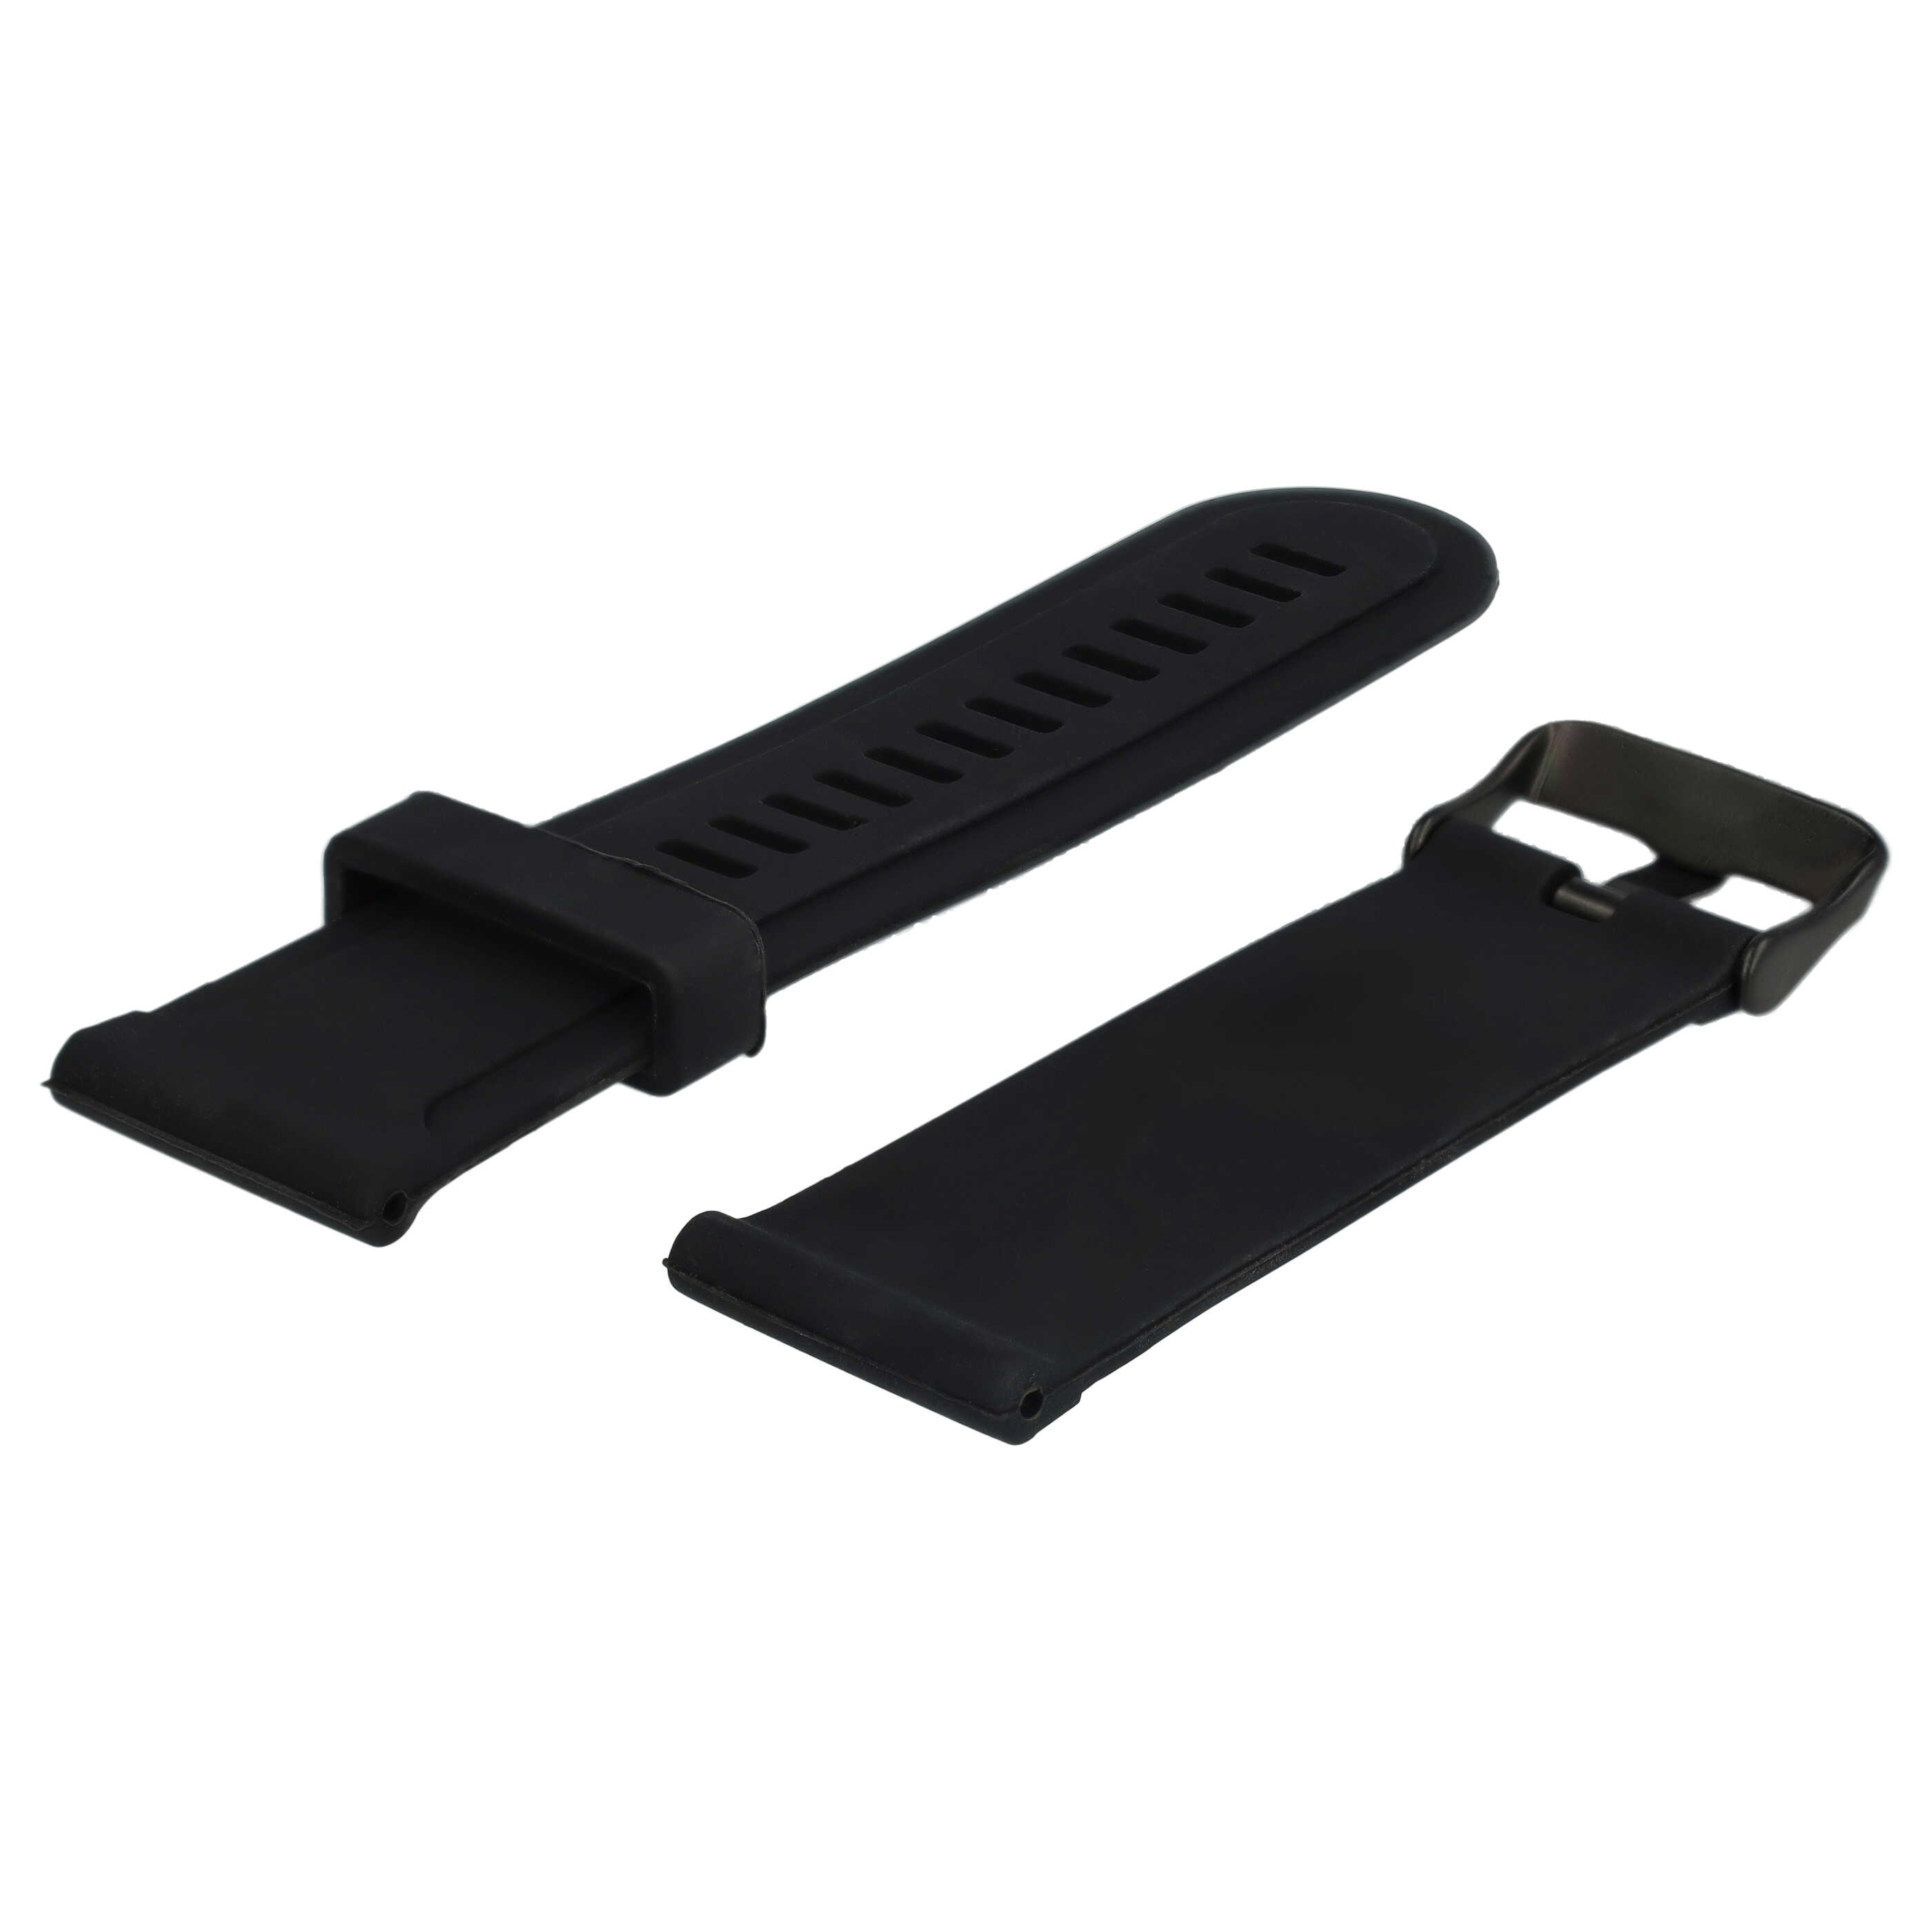 Bracelet L de remplacement pour montre intelligente Suunto - 12,5cm + 8,5 cm de long, silicone, noir